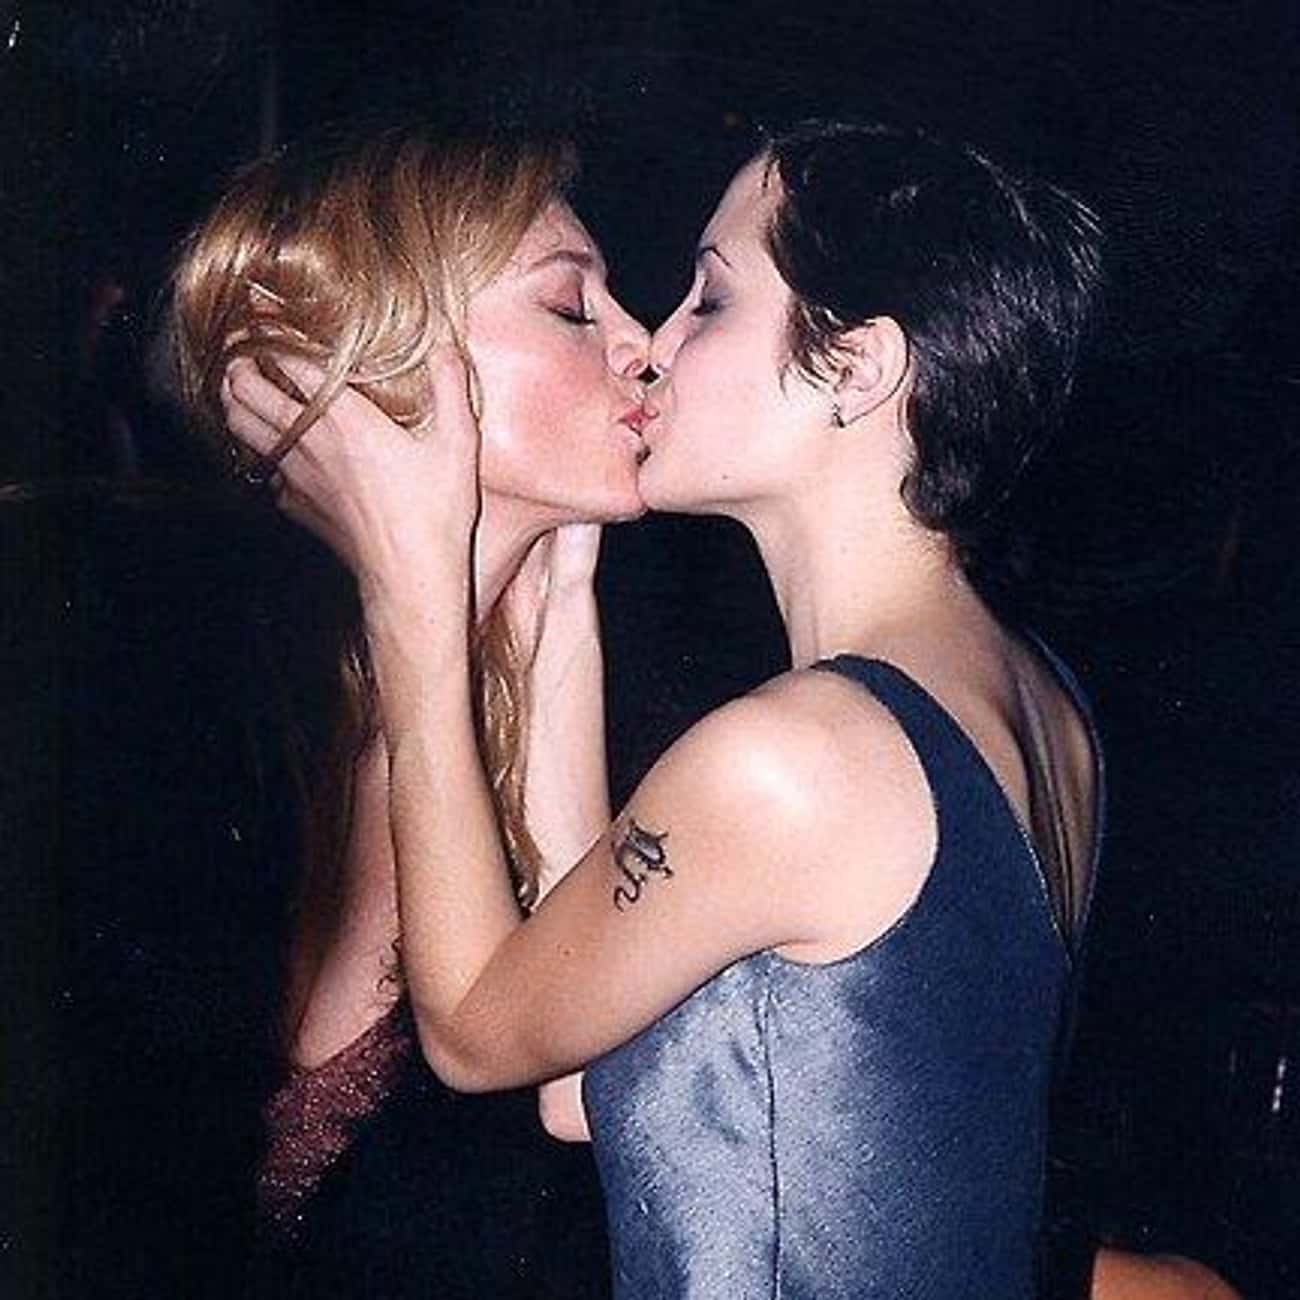 знаменитости лесби целуются фото 1